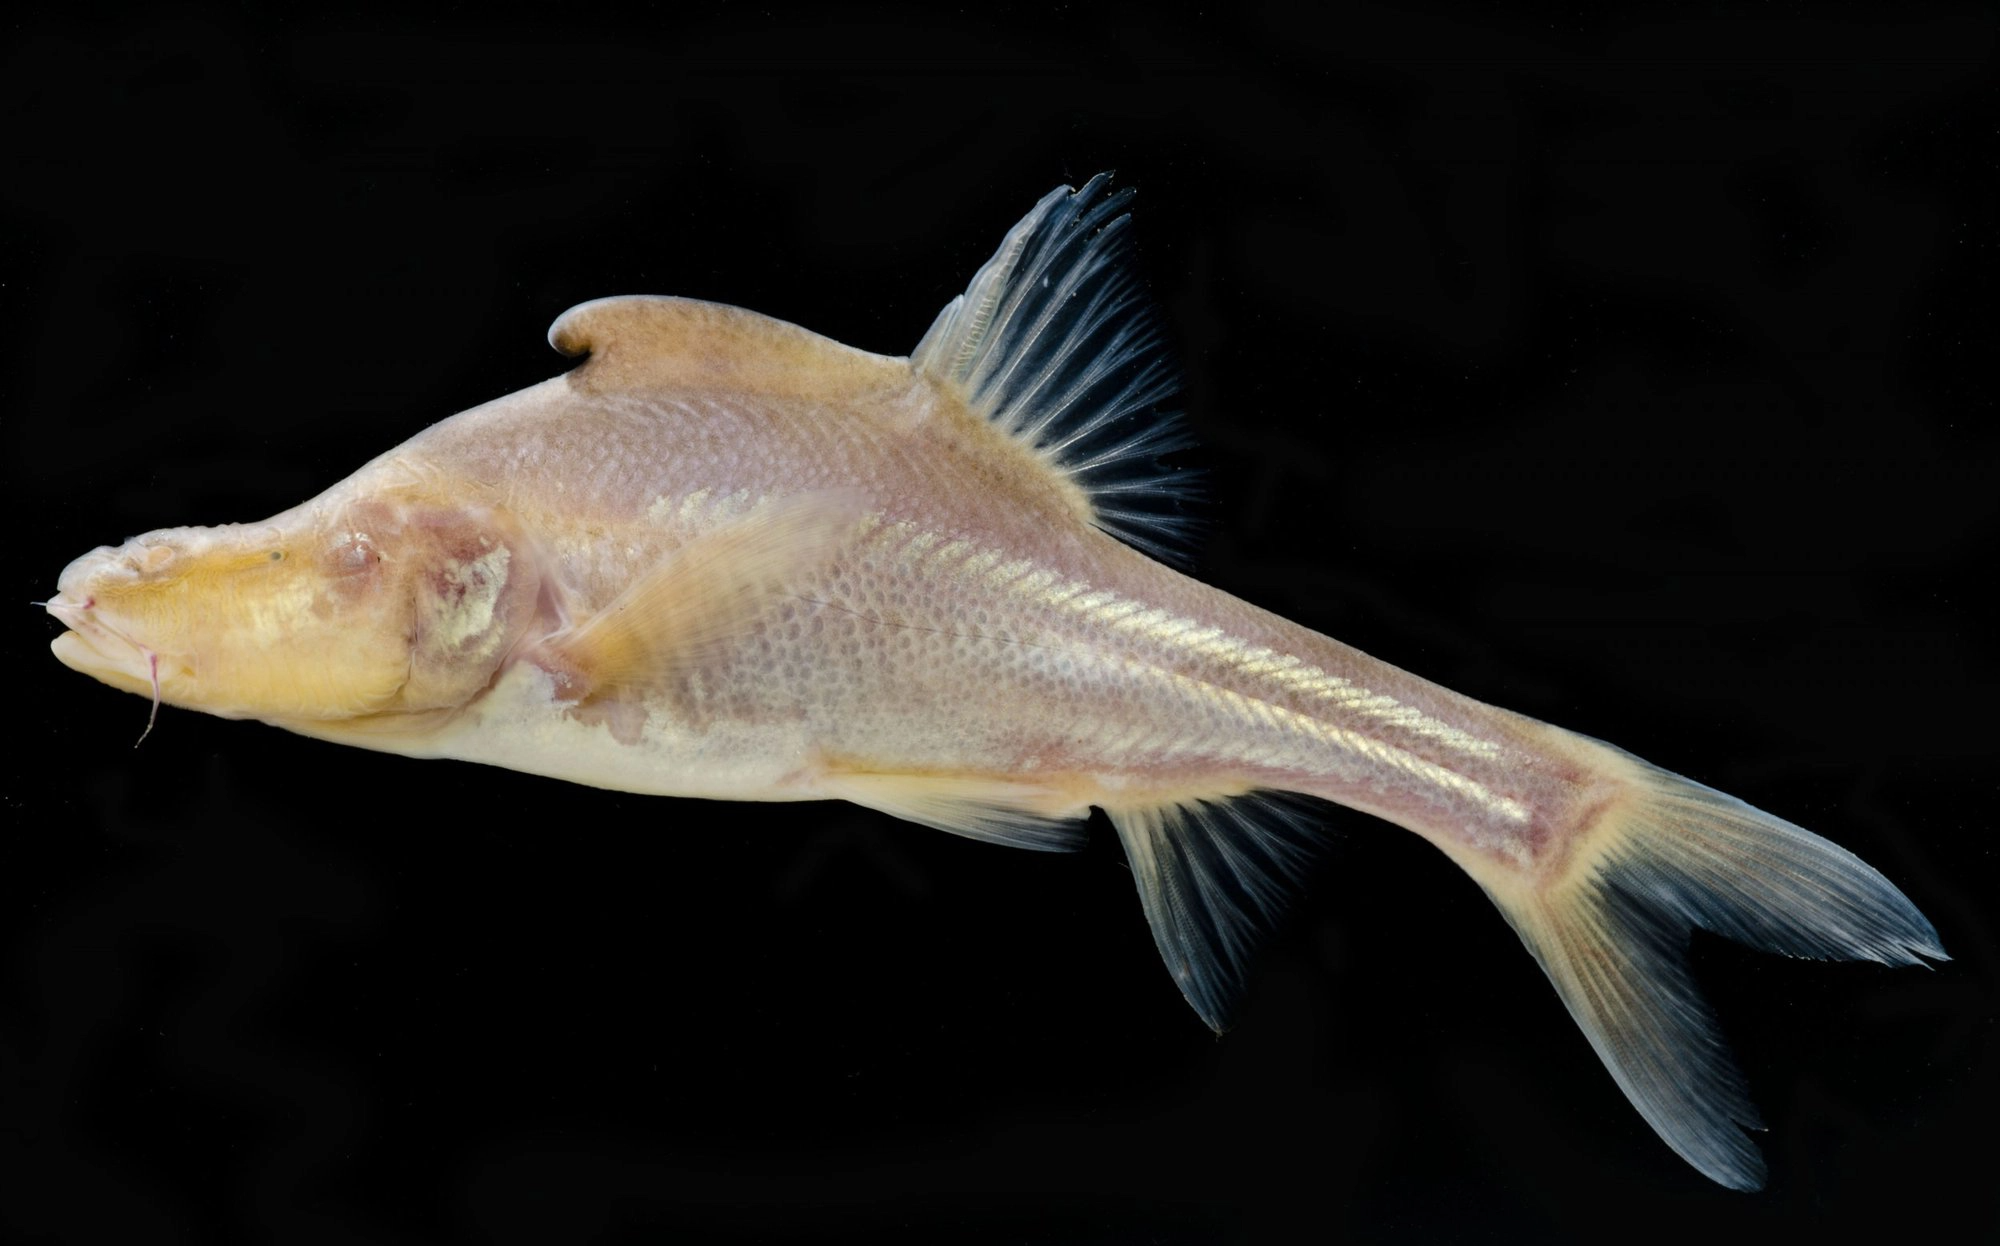 Phát hiện loài cá mới có cấu trúc giống sừng bí ẩn ở phía sau đầu - Ảnh 3.